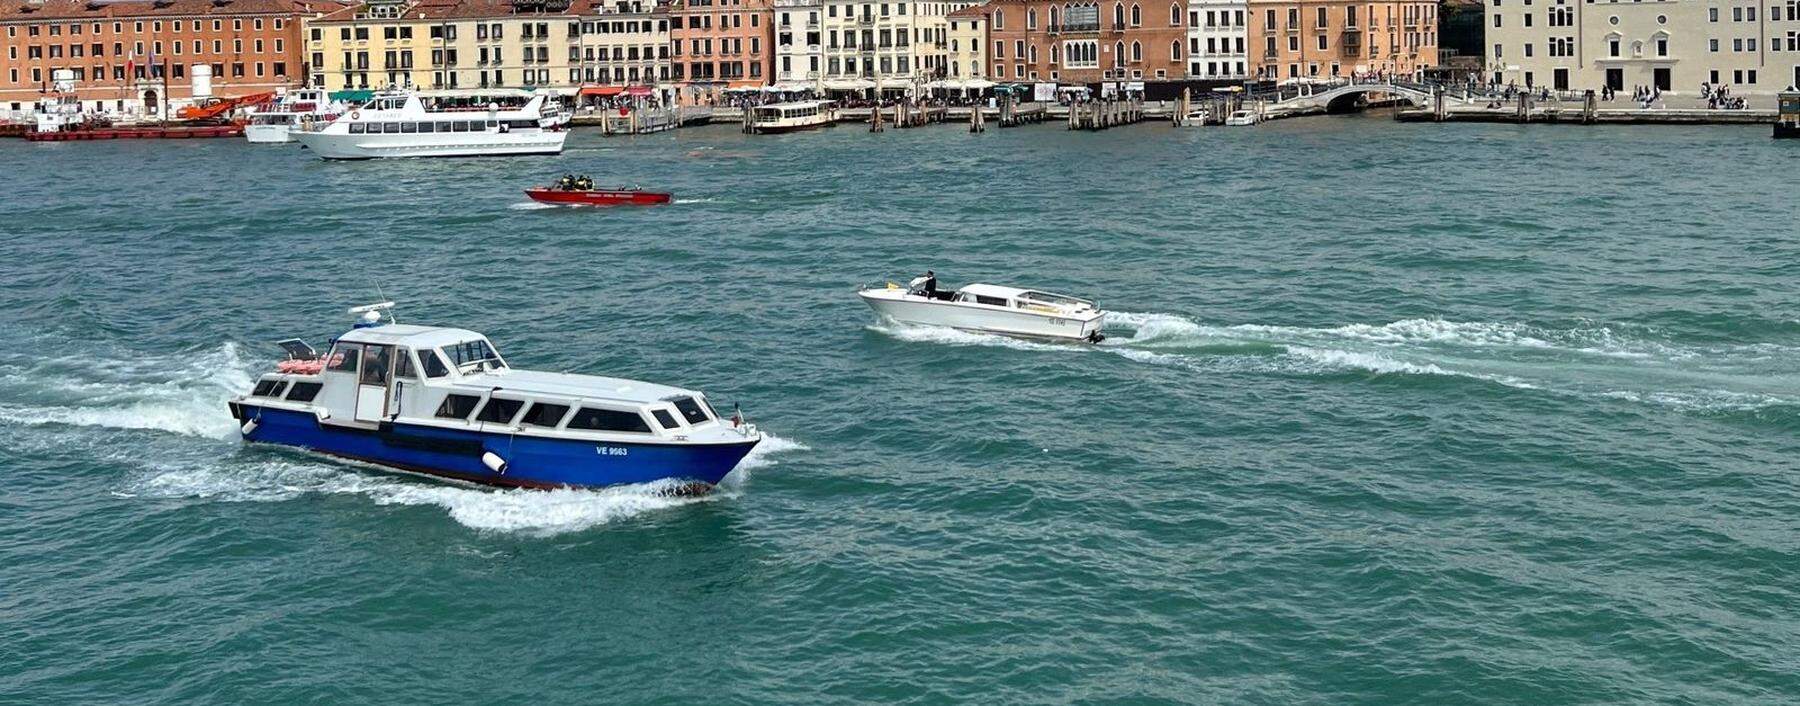 Prächtig, diese Wasserstraßen in  Venedig: kurze Wege mit den Vaporetti.